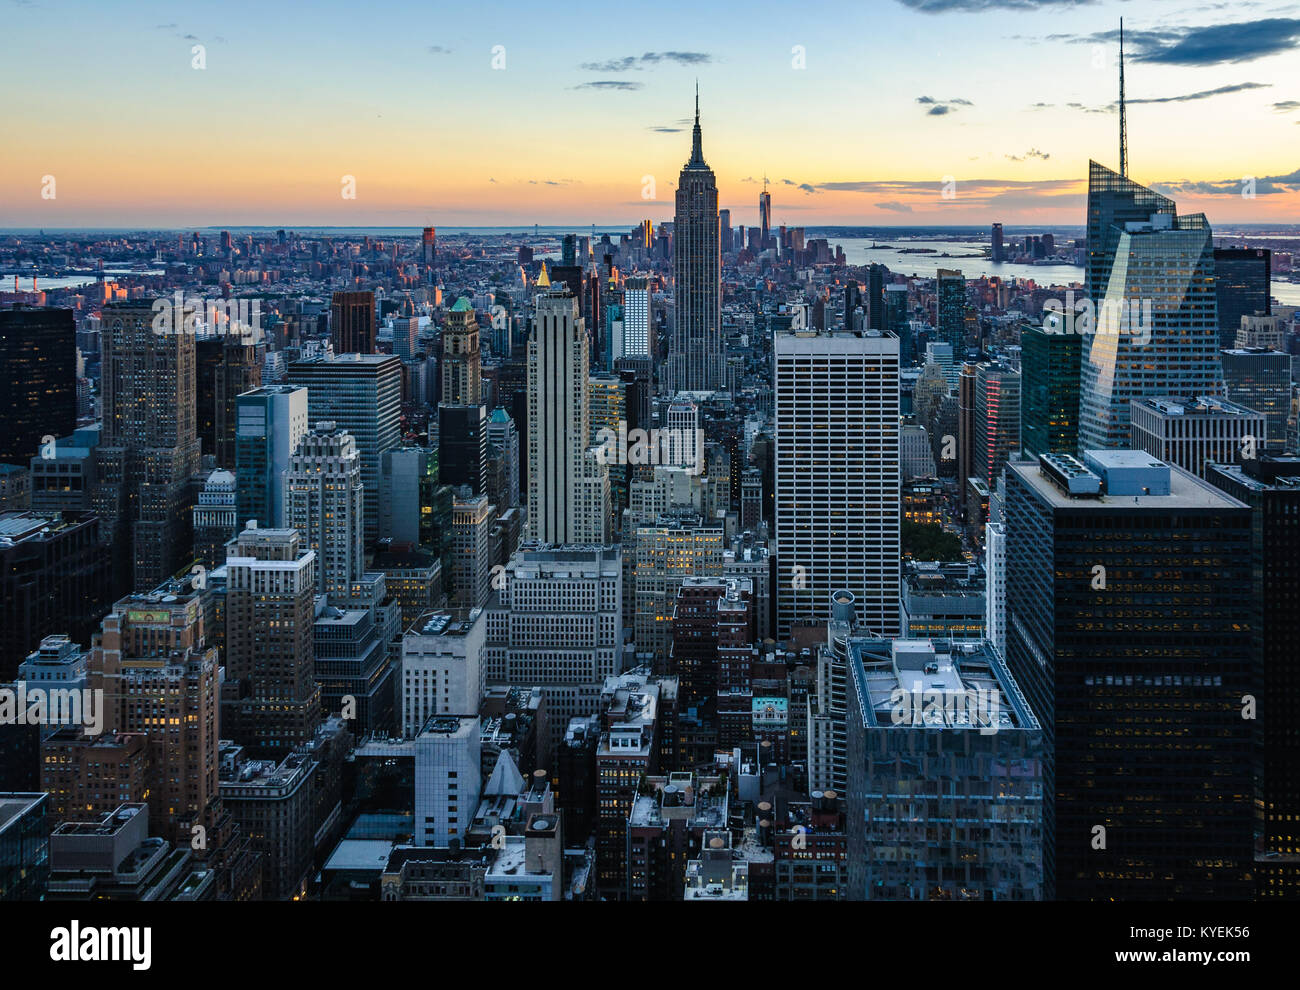 Farben der Skyline bei Sonnenuntergang von der Spitze des Felsens Aussichtsplattform in New York, USA Stockfoto